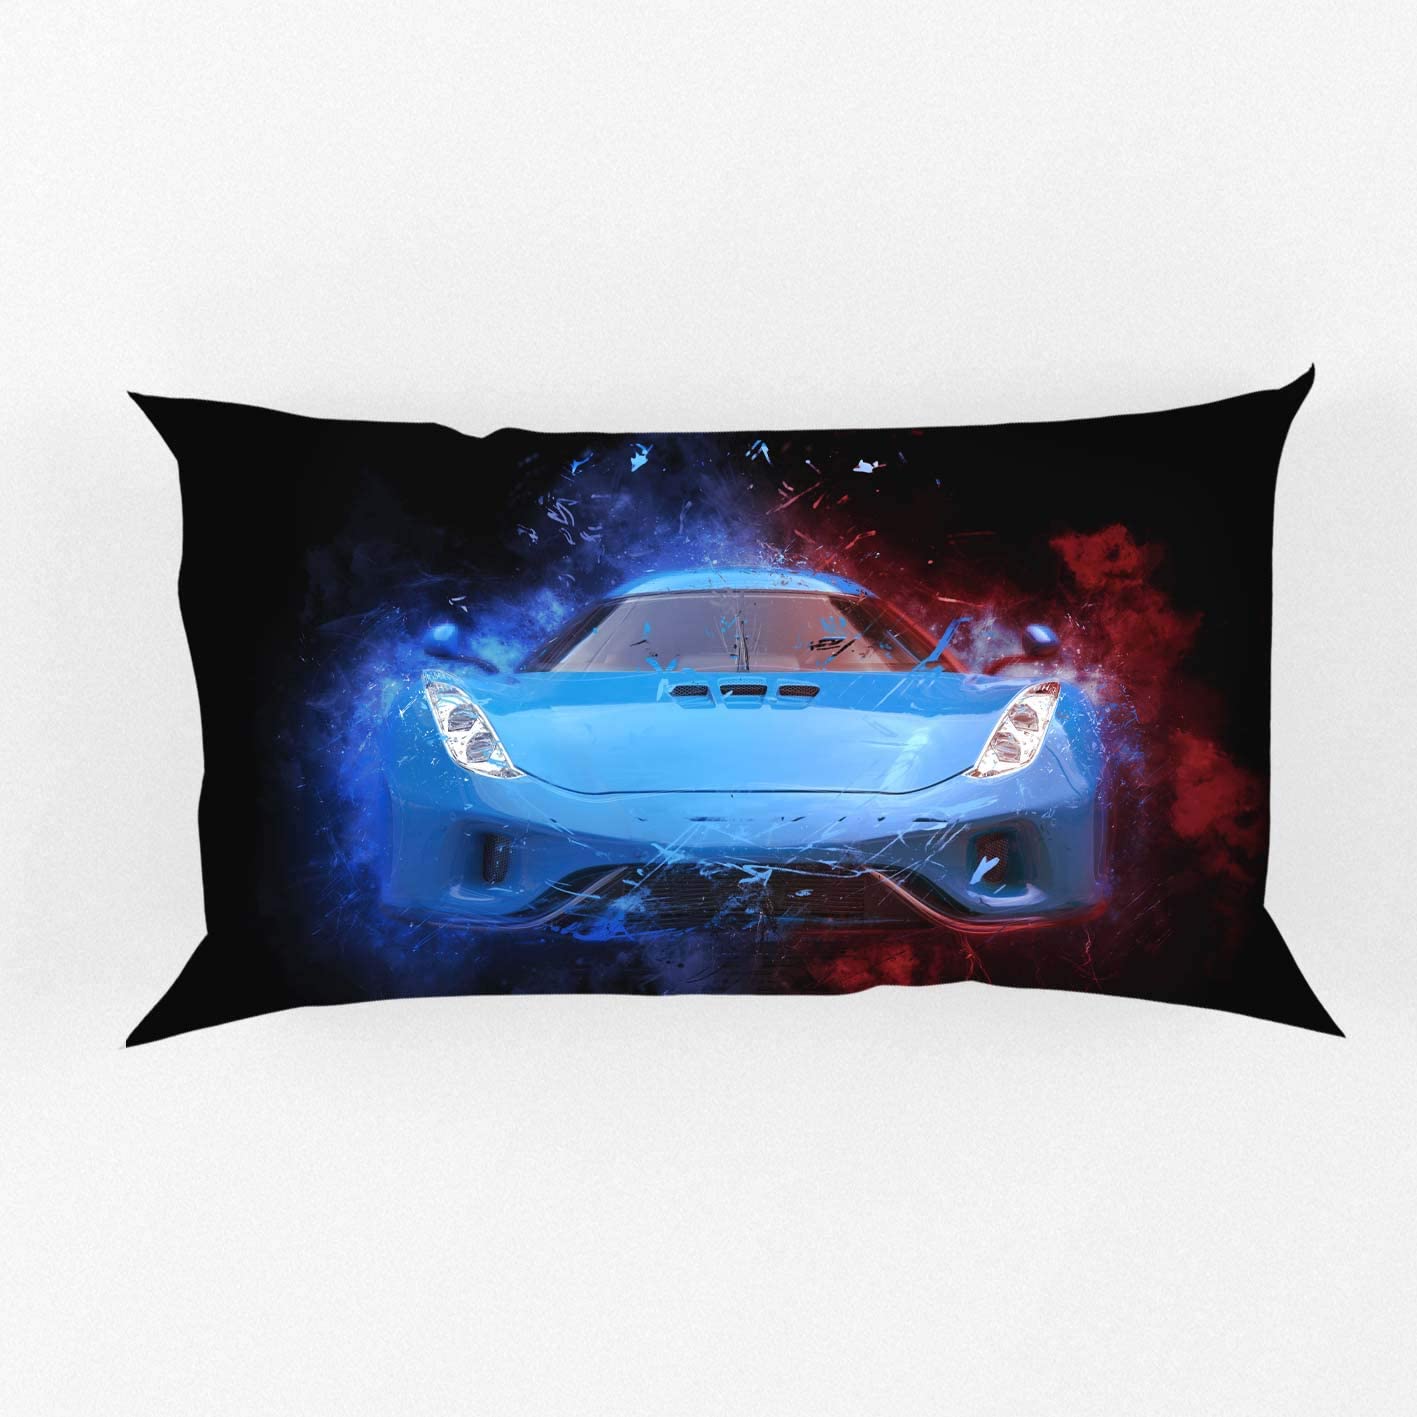 Tema de esporte extremo de carro de corrida automóvel azul por ho me lili edredão decoração de cama de edredão